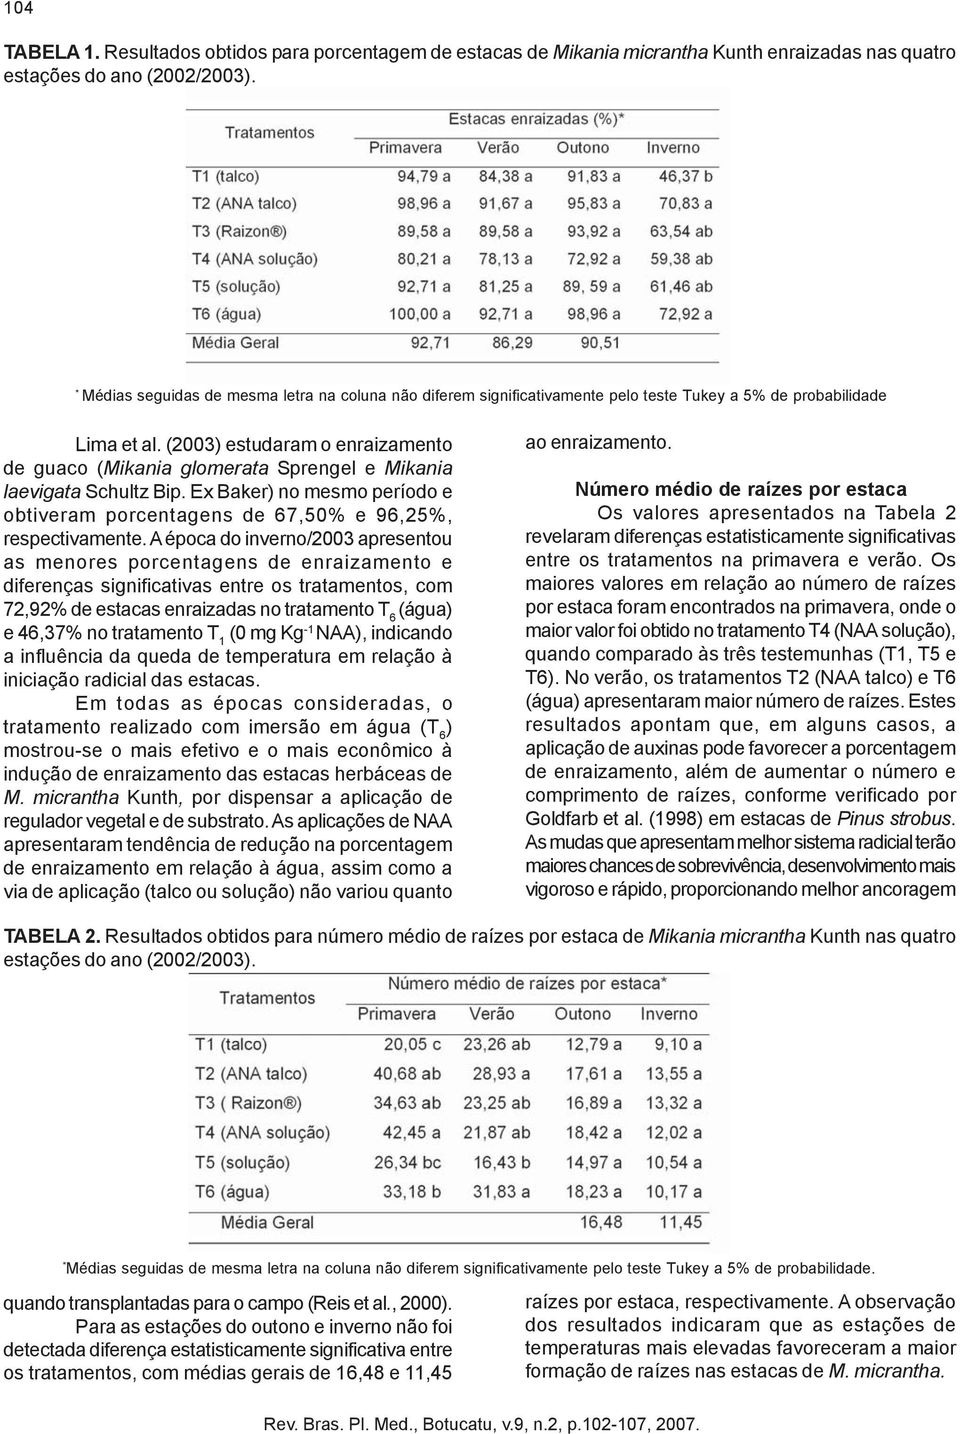 (2003) estudaram o enraizamento de guaco (Mikania glomerata Sprengel e Mikania laevigata Schultz Bip. Ex Baker) no mesmo período e obtiveram porcentagens de 67,50% e 96,25%, respectivamente.